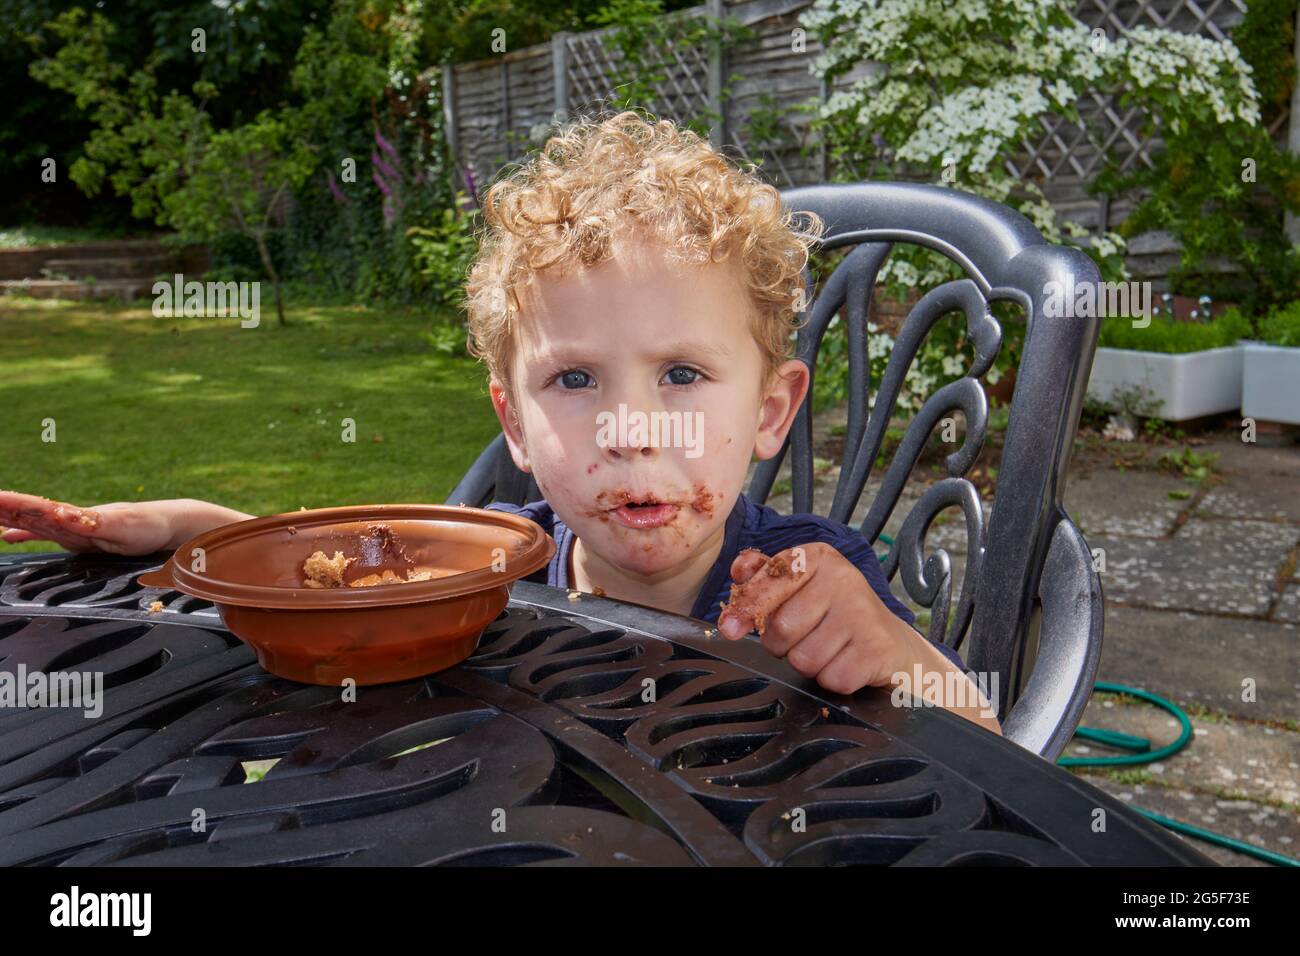 Un chico pequeño caucásico blanco pegajoso de casi 3 años de edad con pelo rubio rizado se sienta al aire libre con una boca marrón rubia comiendo pastel de chocolate Foto de stock